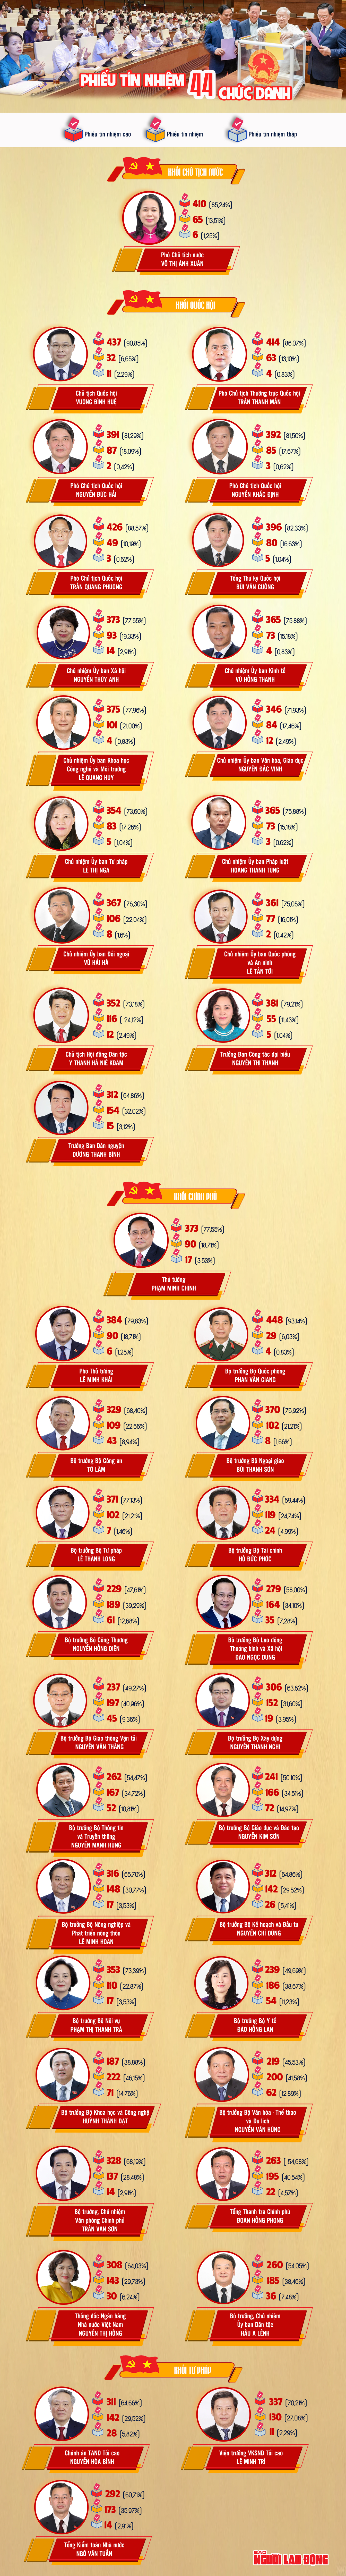 Chi tiết kết quả lấy phiếu tín nhiệm 44 chức danh tại Quốc hội - Ảnh 1.